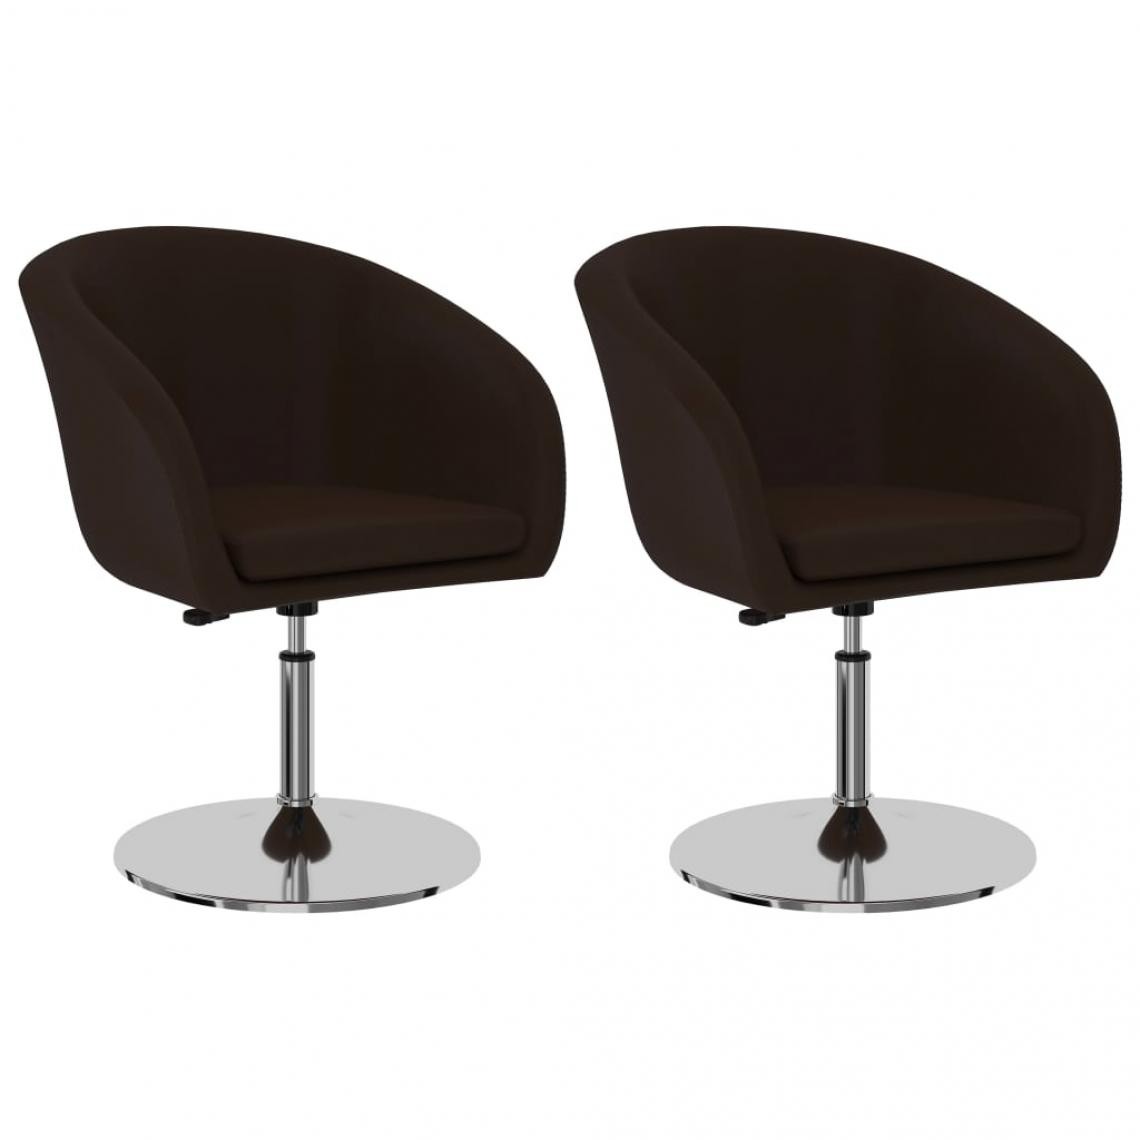 Decoshop26 - Lot de 2 chaises de salle à manger cuisine design contemporain similicuir marron CDS020732 - Chaises